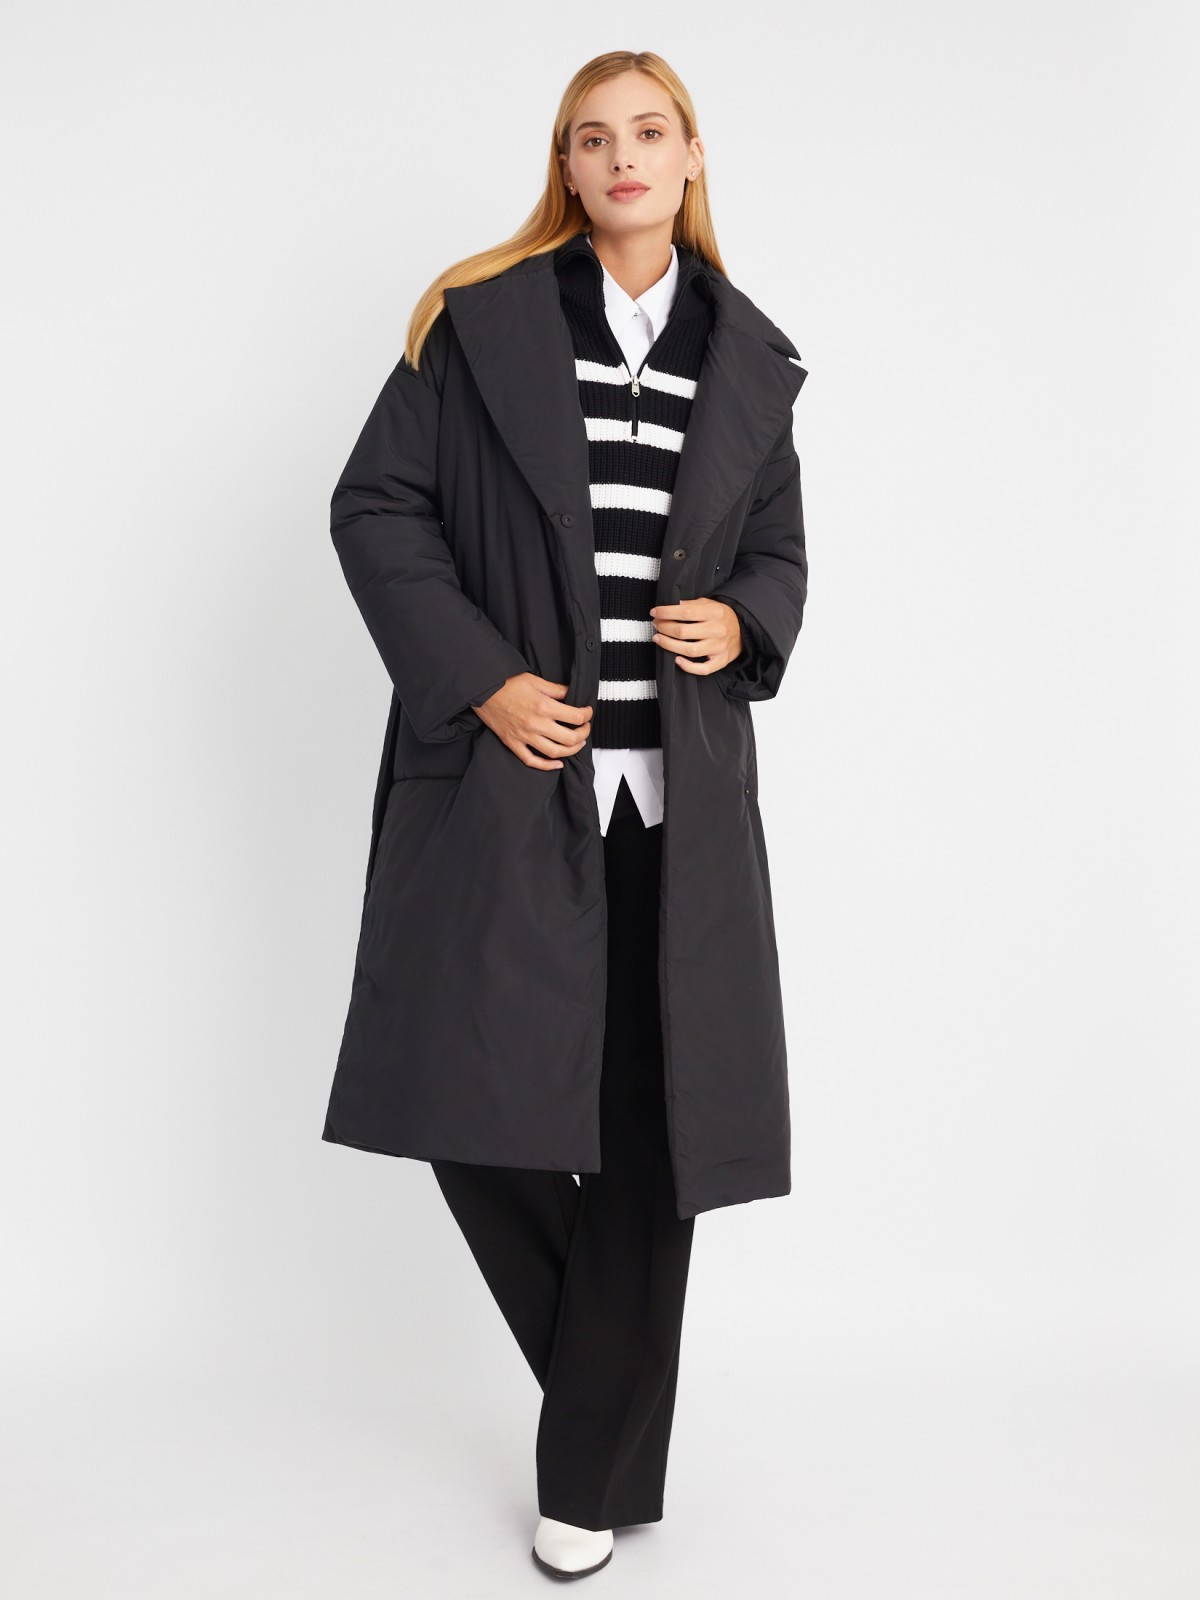 Тёплое пальто оверсайз силуэта на синтепоне с отложным воротником и поясом zolla 023335297244, цвет черный, размер L - фото 2